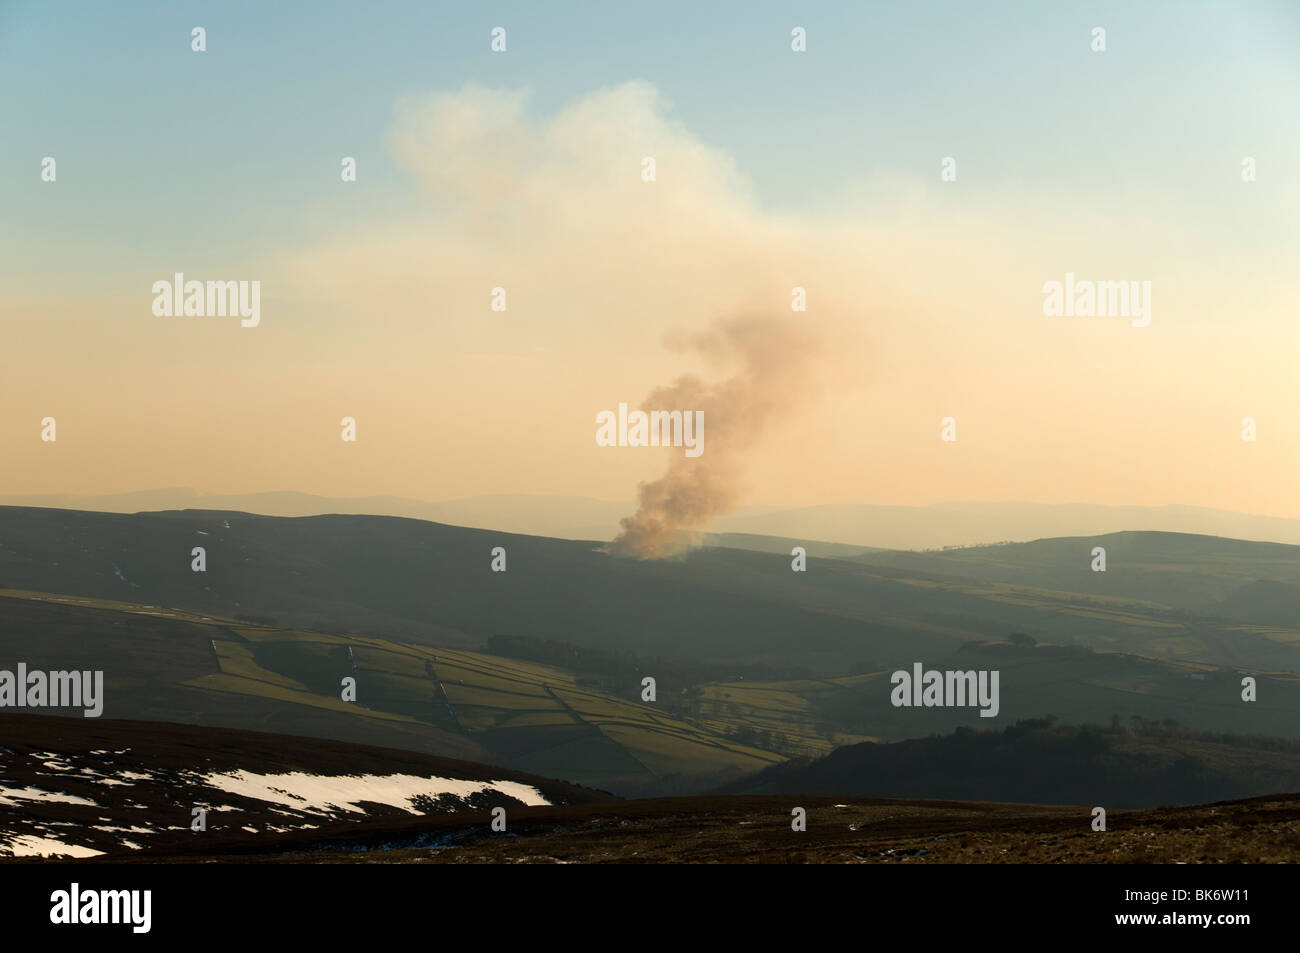 La fumée produite par la combustion de Heather, vus de près de Bleaklow Glossop, Peak District, Derbyshire, Angleterre, RU Banque D'Images